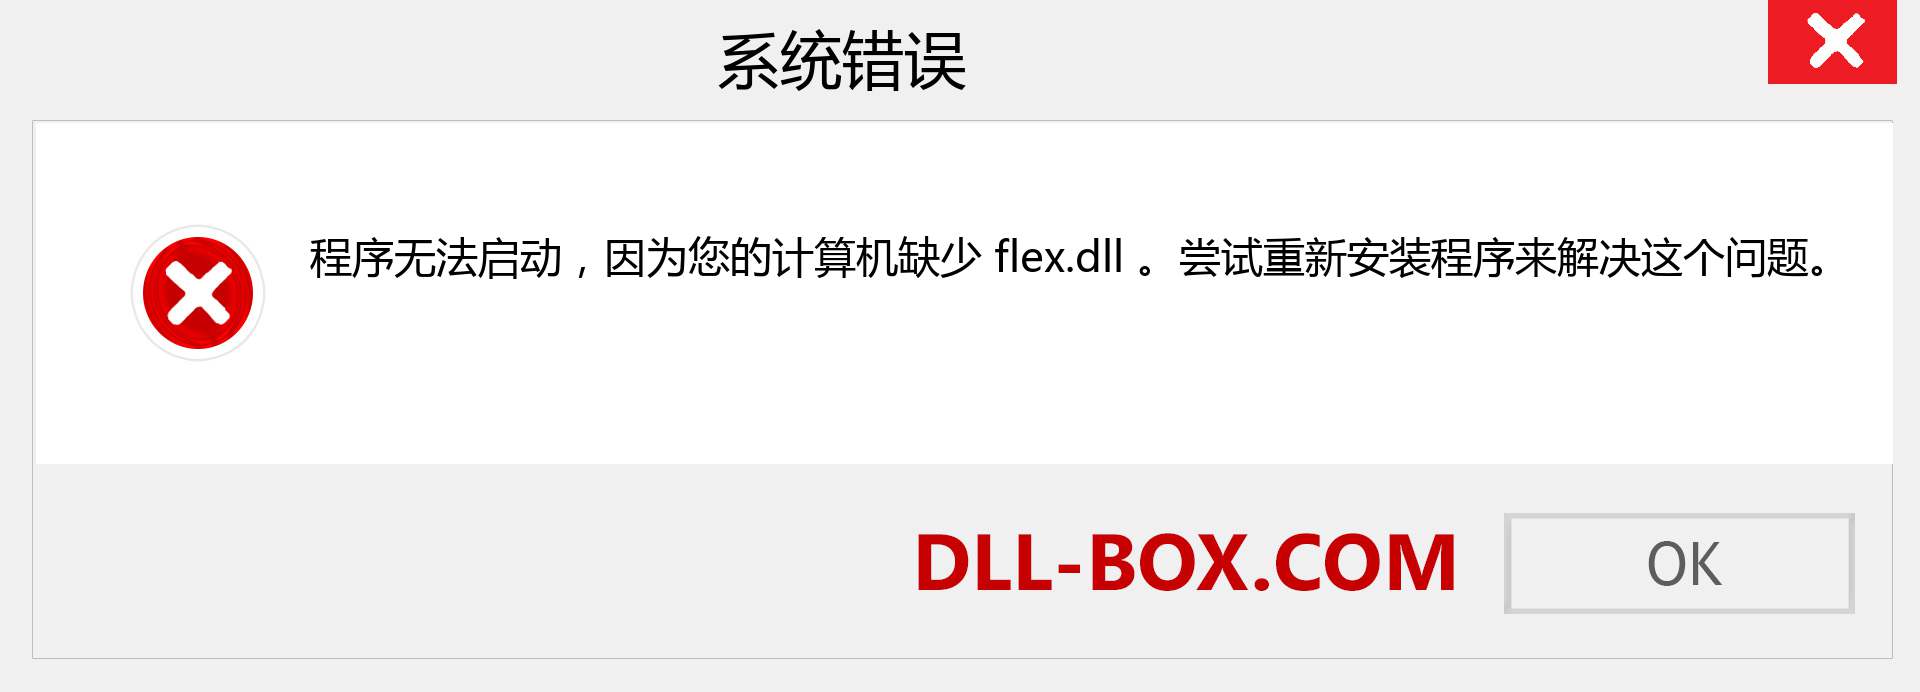 flex.dll 文件丢失？。 适用于 Windows 7、8、10 的下载 - 修复 Windows、照片、图像上的 flex dll 丢失错误